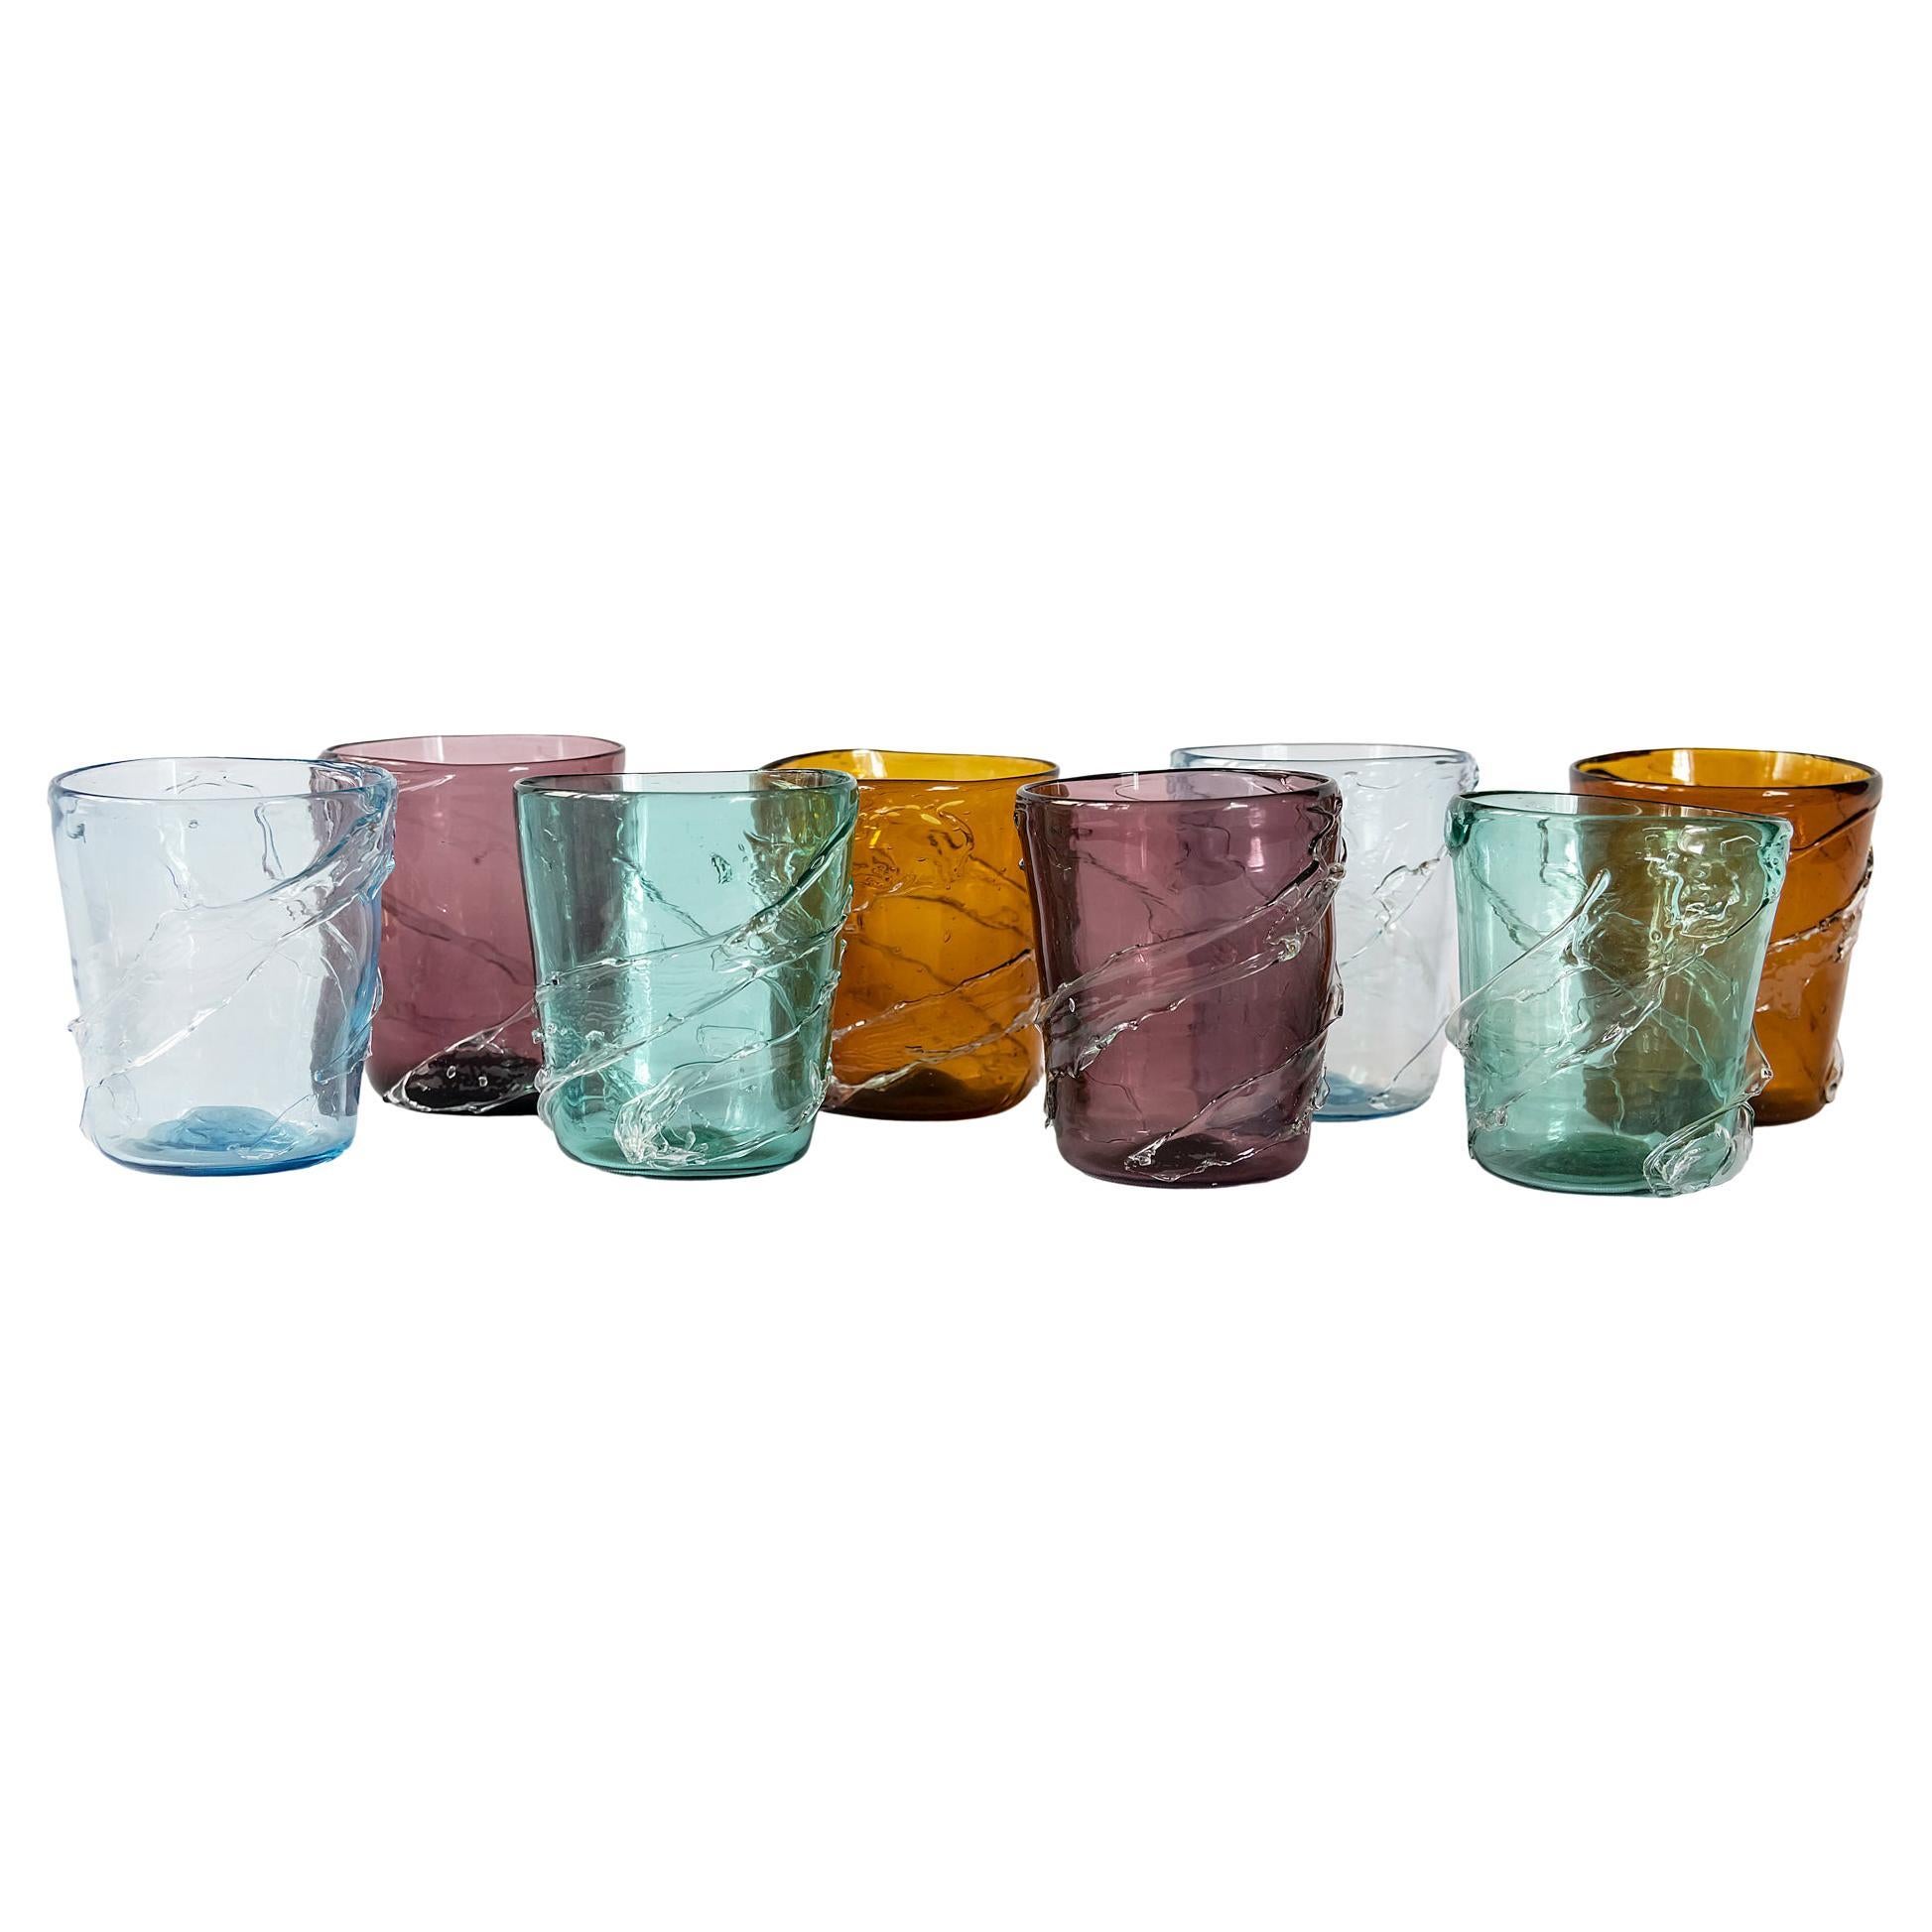 Set of 8 Italian Handmade Murano Glasses For Sale